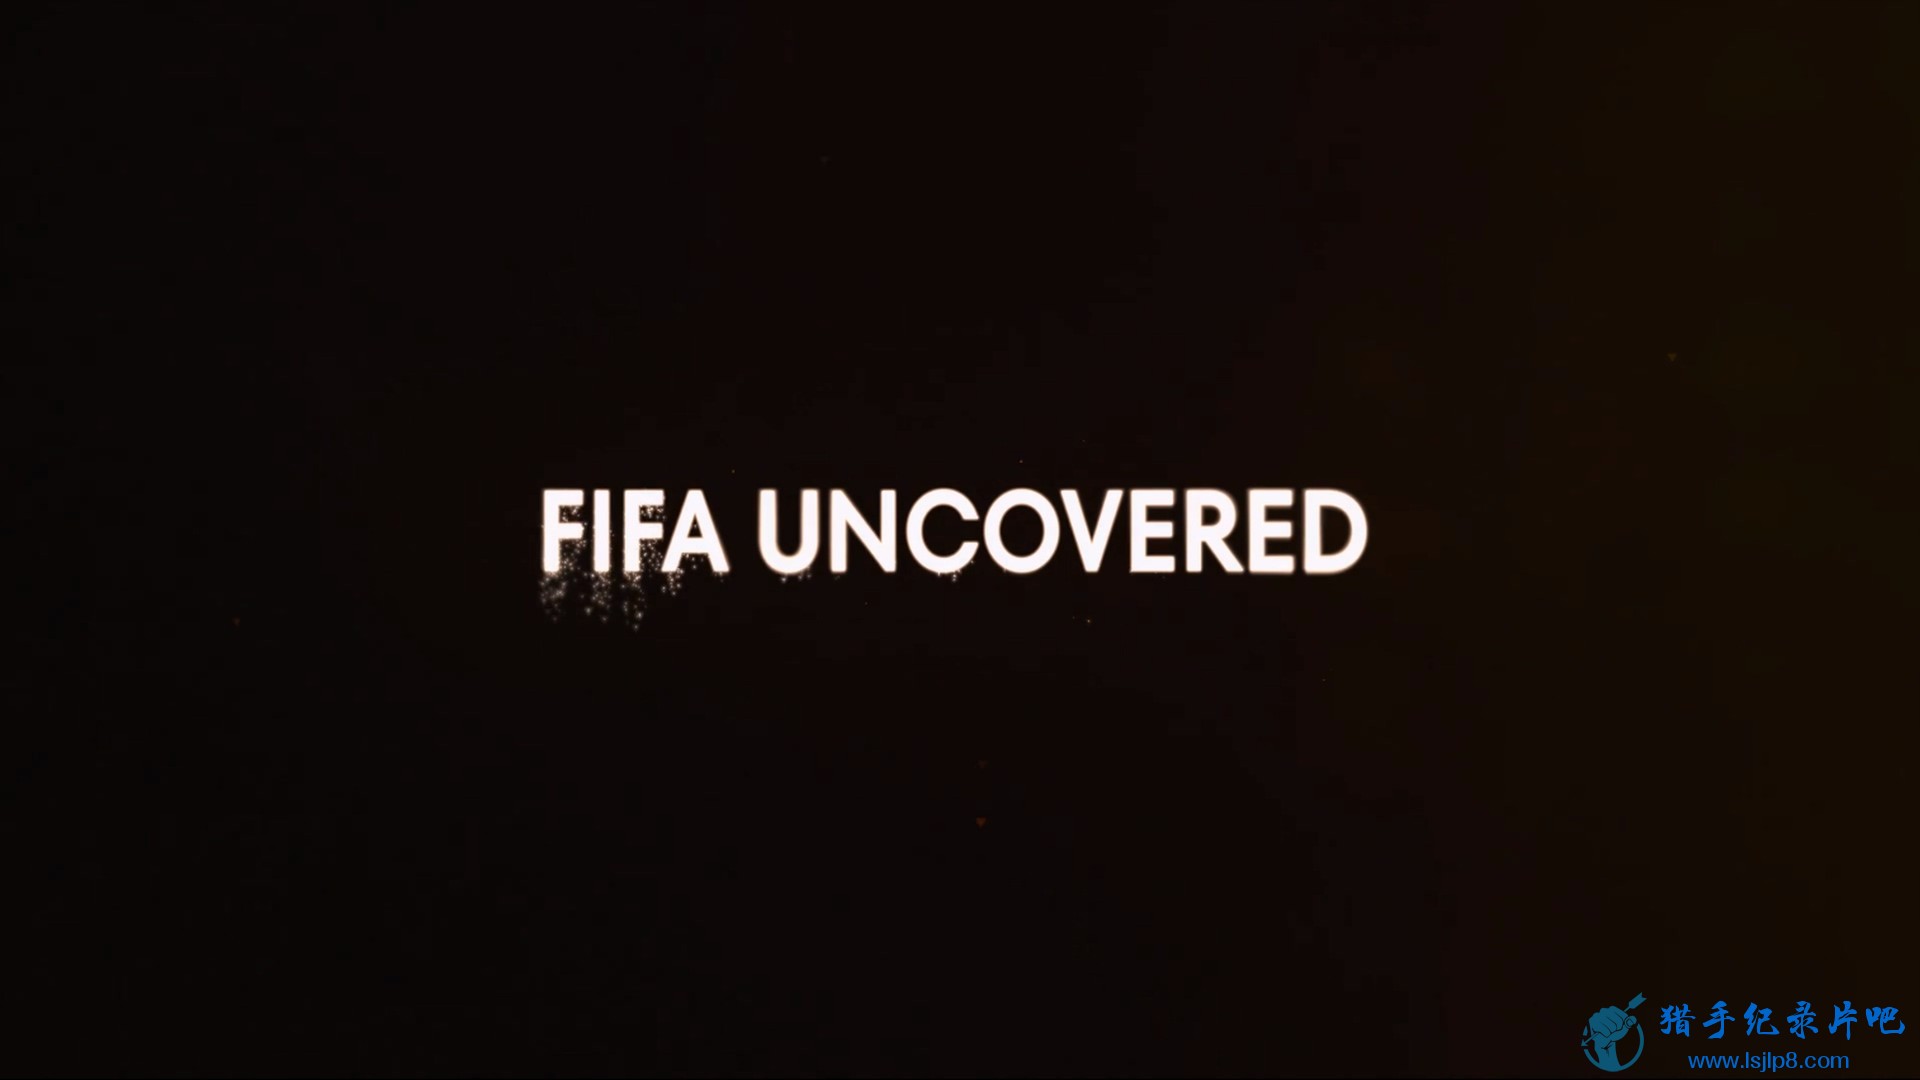 FIFA.Uncovered.S01E01.Episode.1.1080p.NF.WEB-DL.DDP5.1.H.264-SMURF.mkv_20240309_.jpg